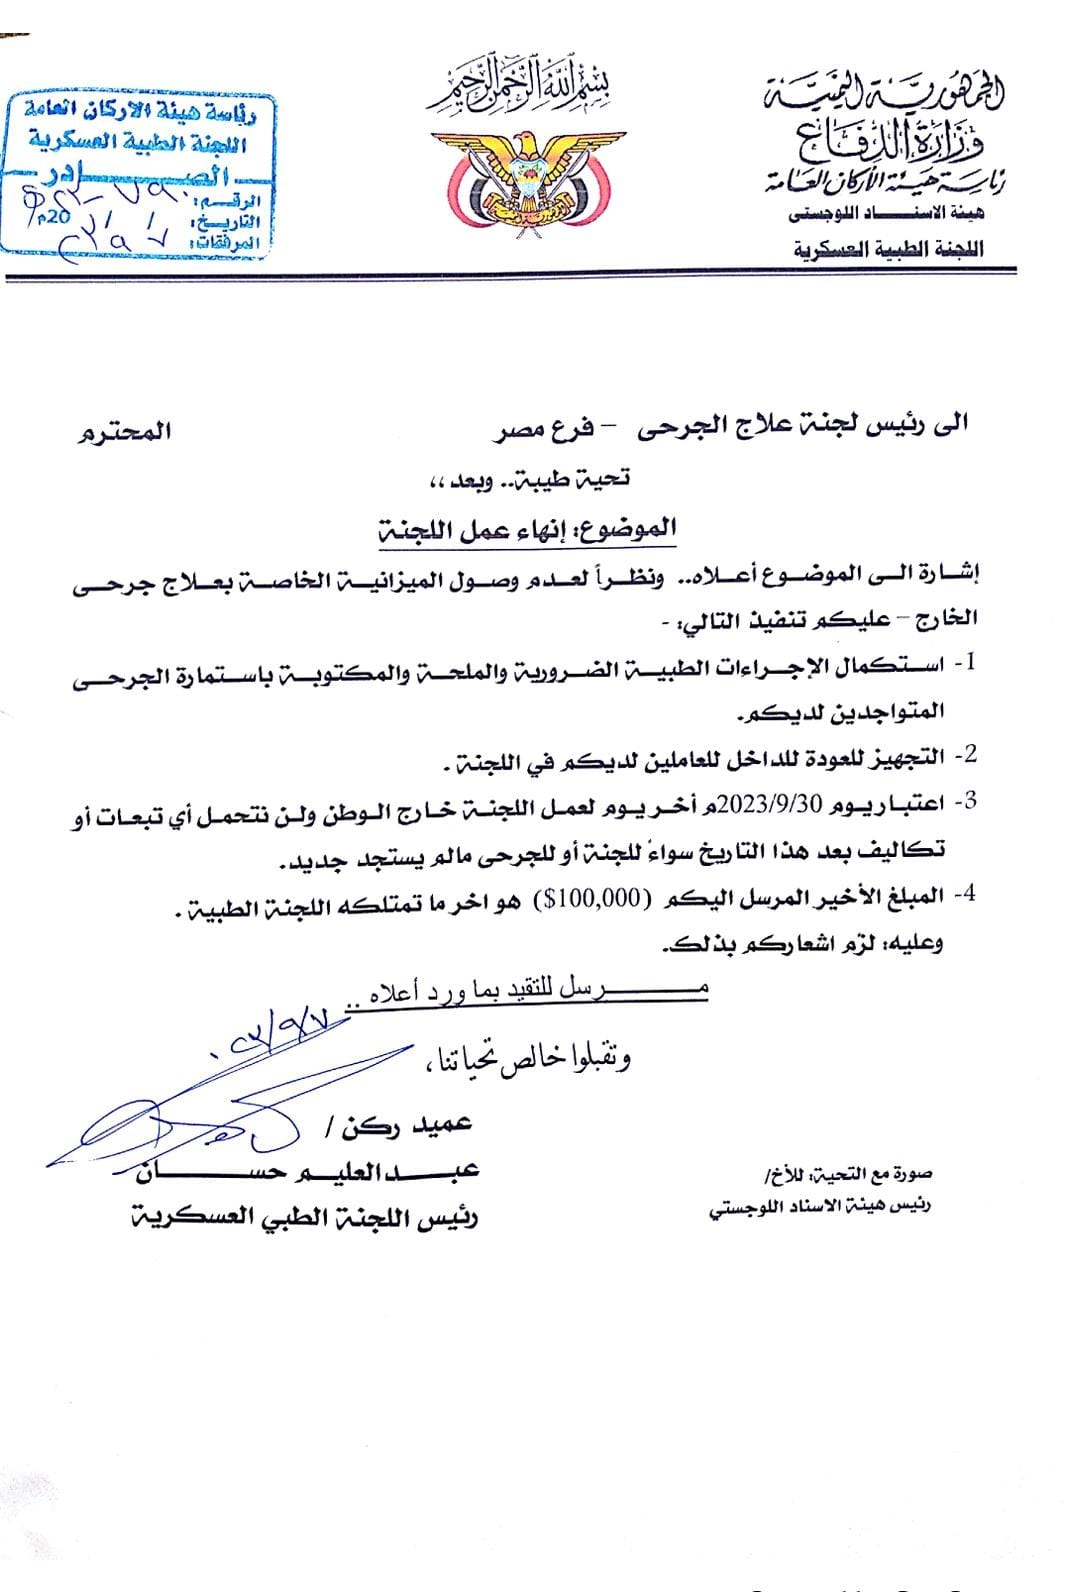 اللجنة الطبية العسكرية تعلن إنهاء علاج جرحى الجيش الوطني في مصر 